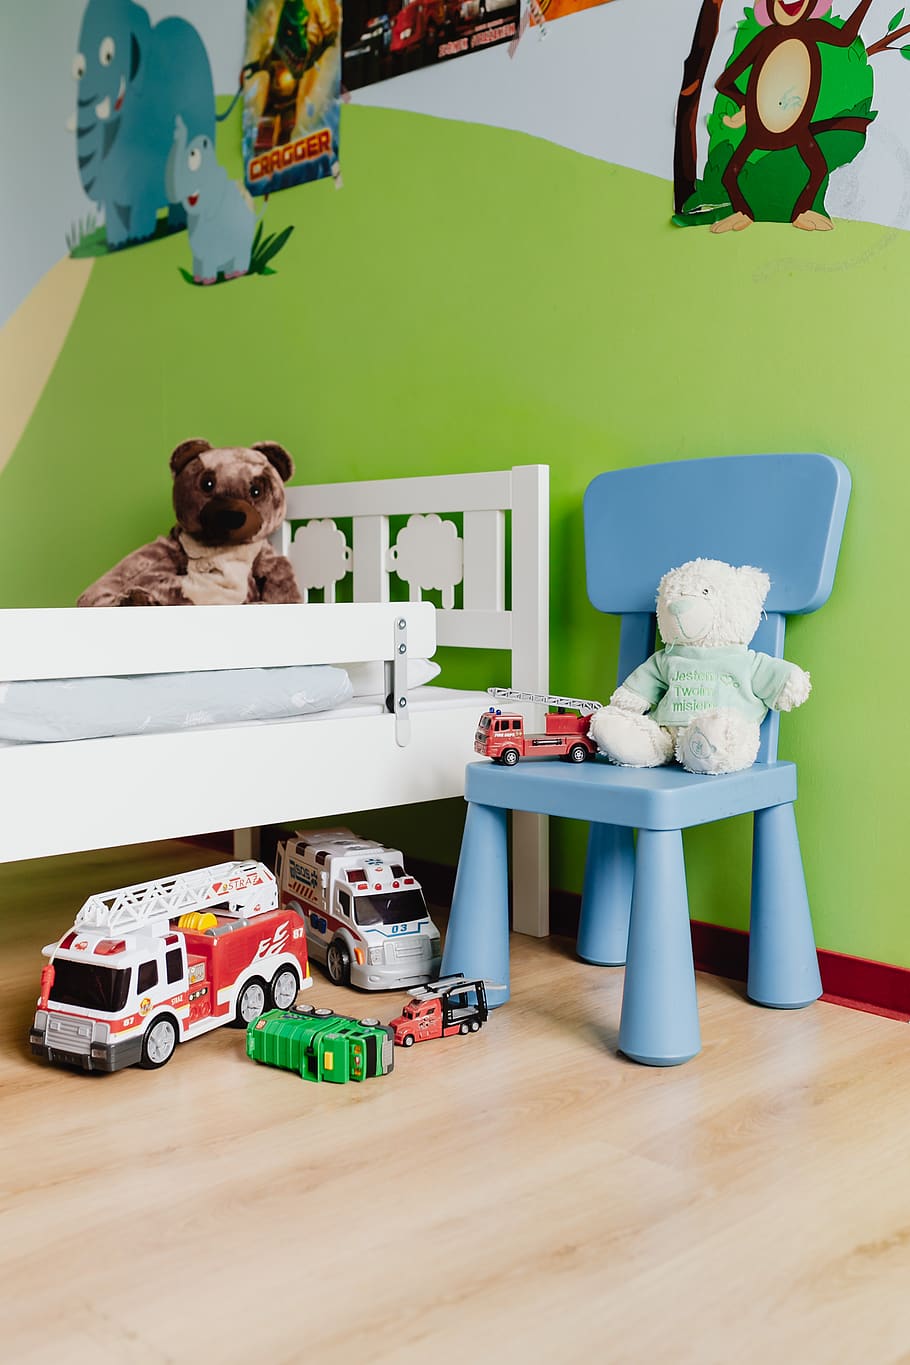 habitación, niños, juguetes, dormitorio, niño, juego, interior, cama, mamífero, juguete